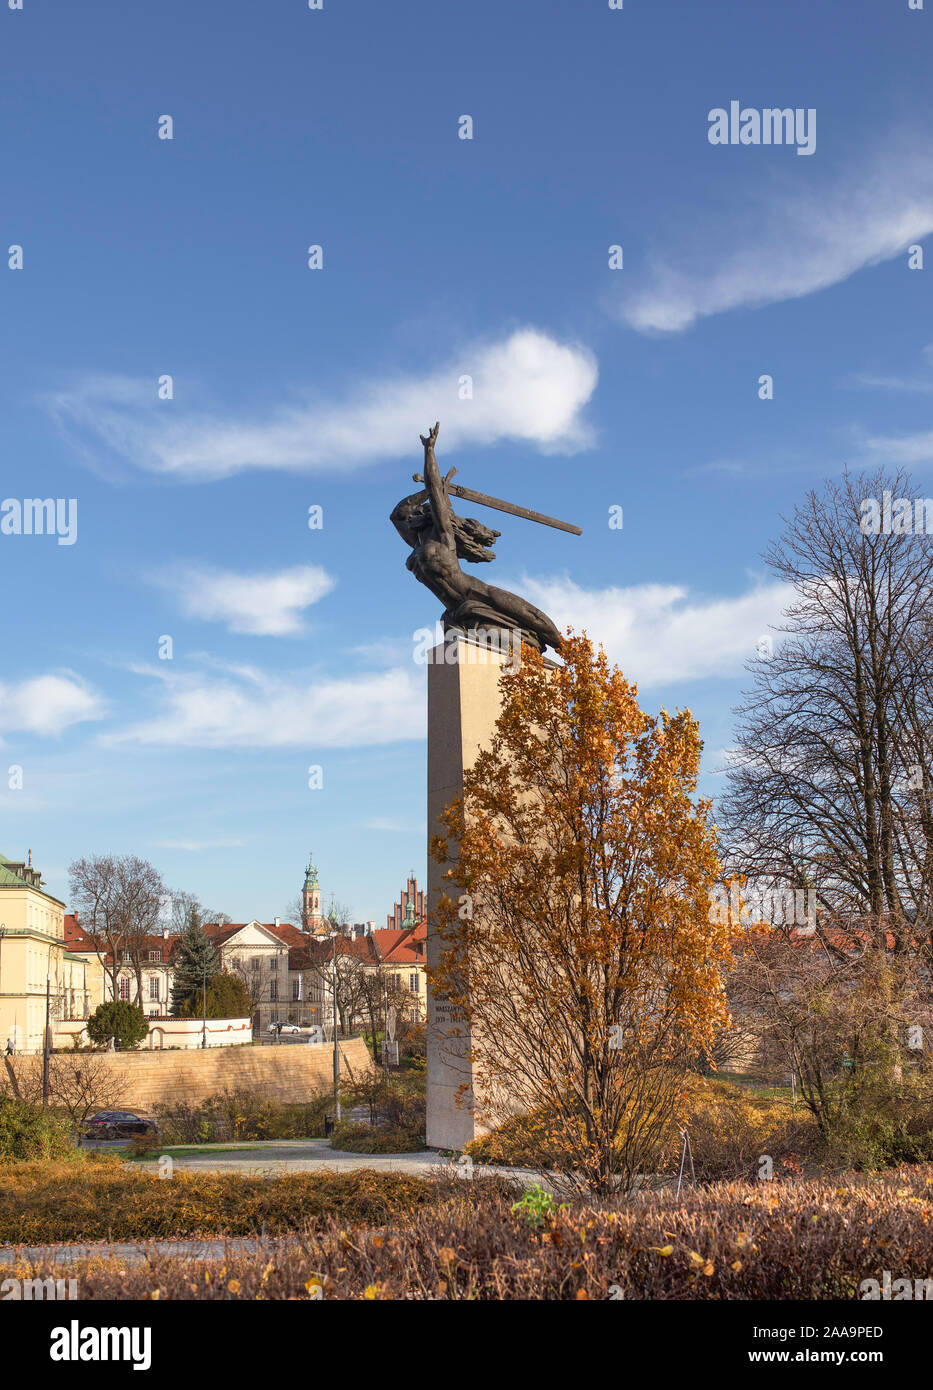 Warszawska Nike - The Monument to the Heroes of Warsaw - Nike, city landmarks, rebuild old town. / Poland Stock Photo - Alamy